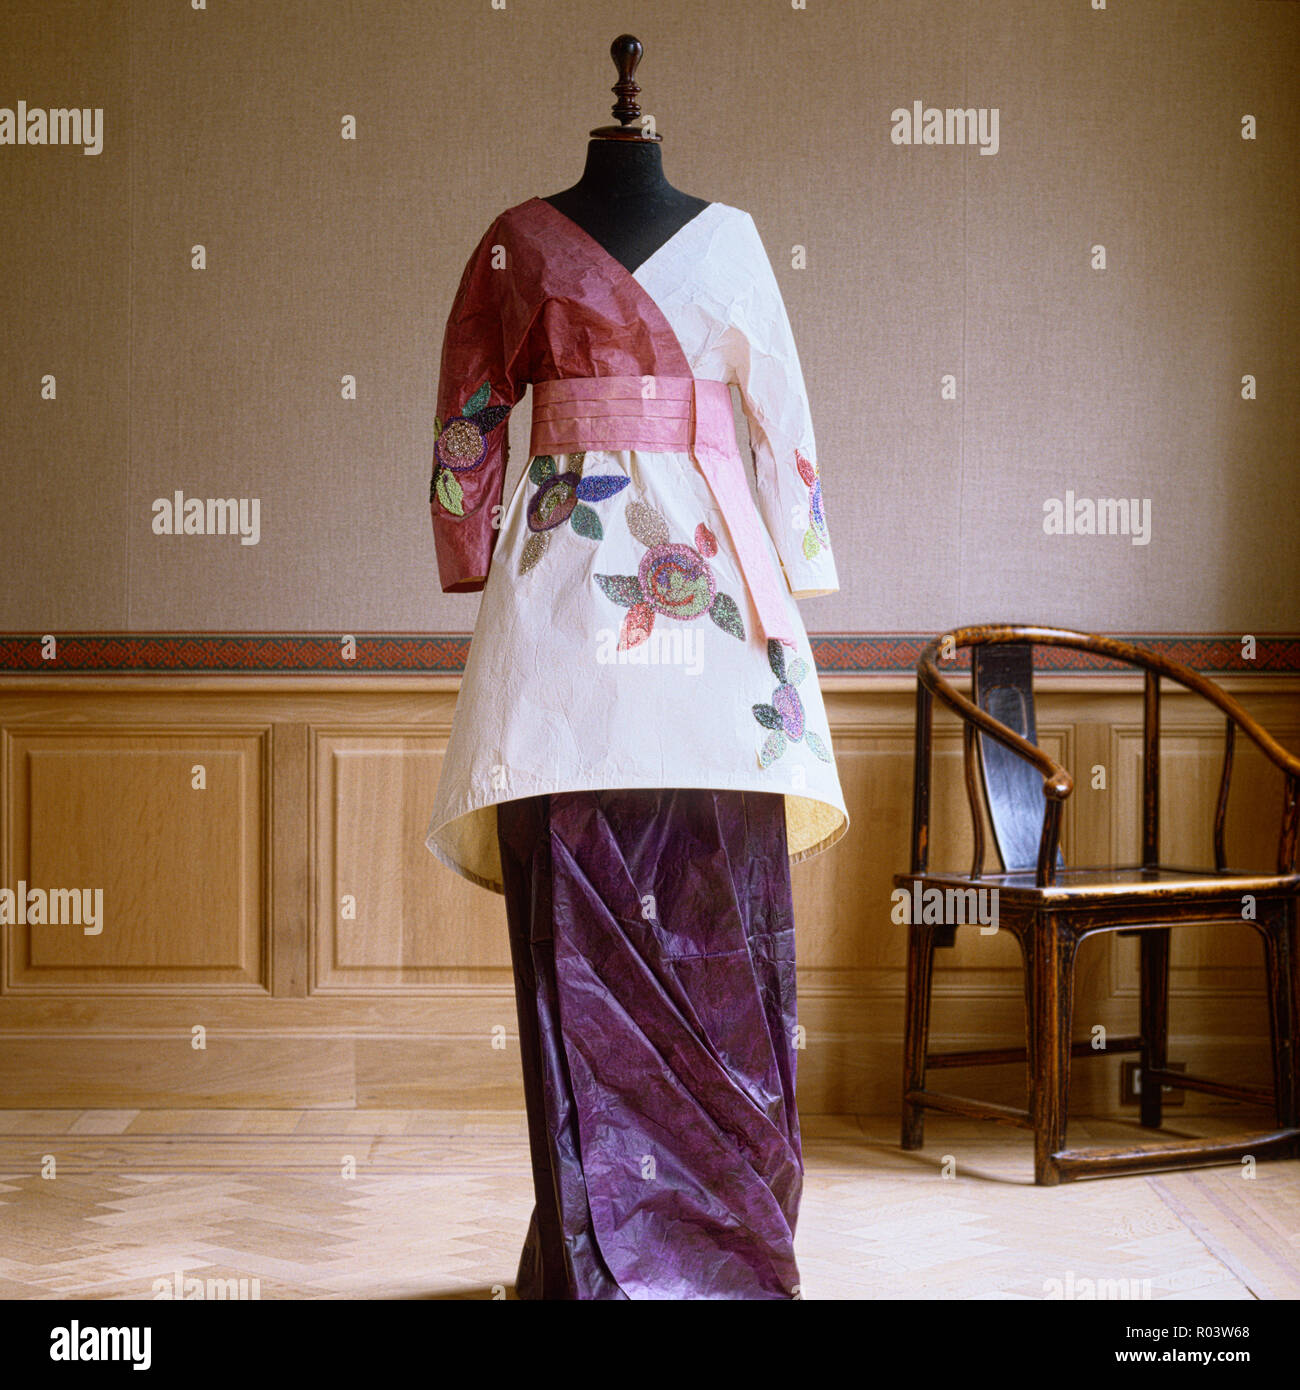 Stile orientale vestito di carta di Isabelle de Borchgrave Foto Stock